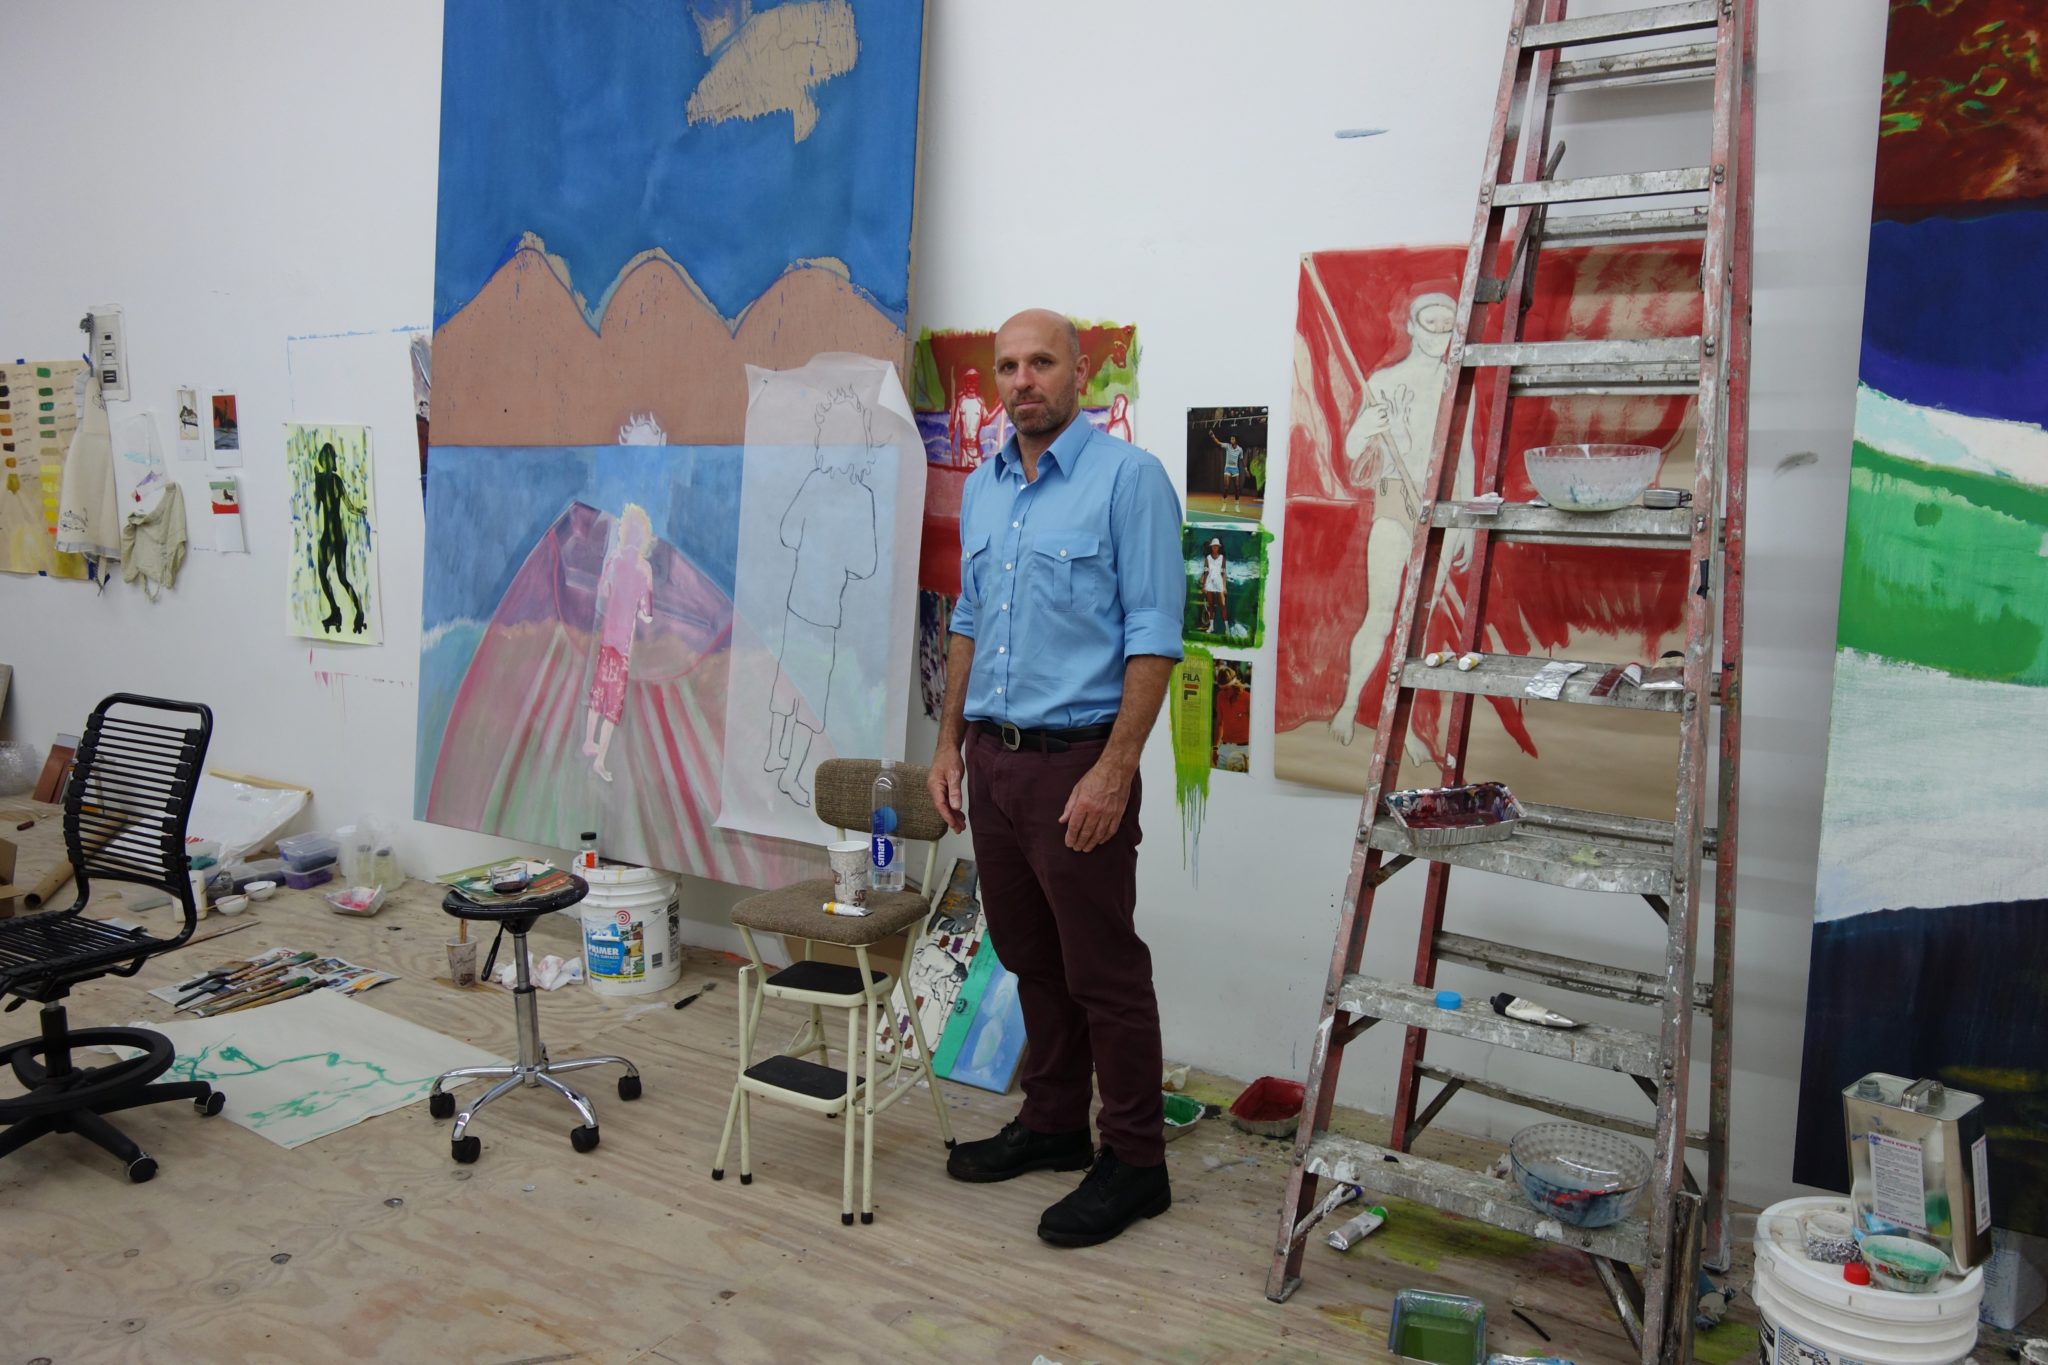 Intervista a Milovan Farronato sulla mostra veneziana di Peter Doig